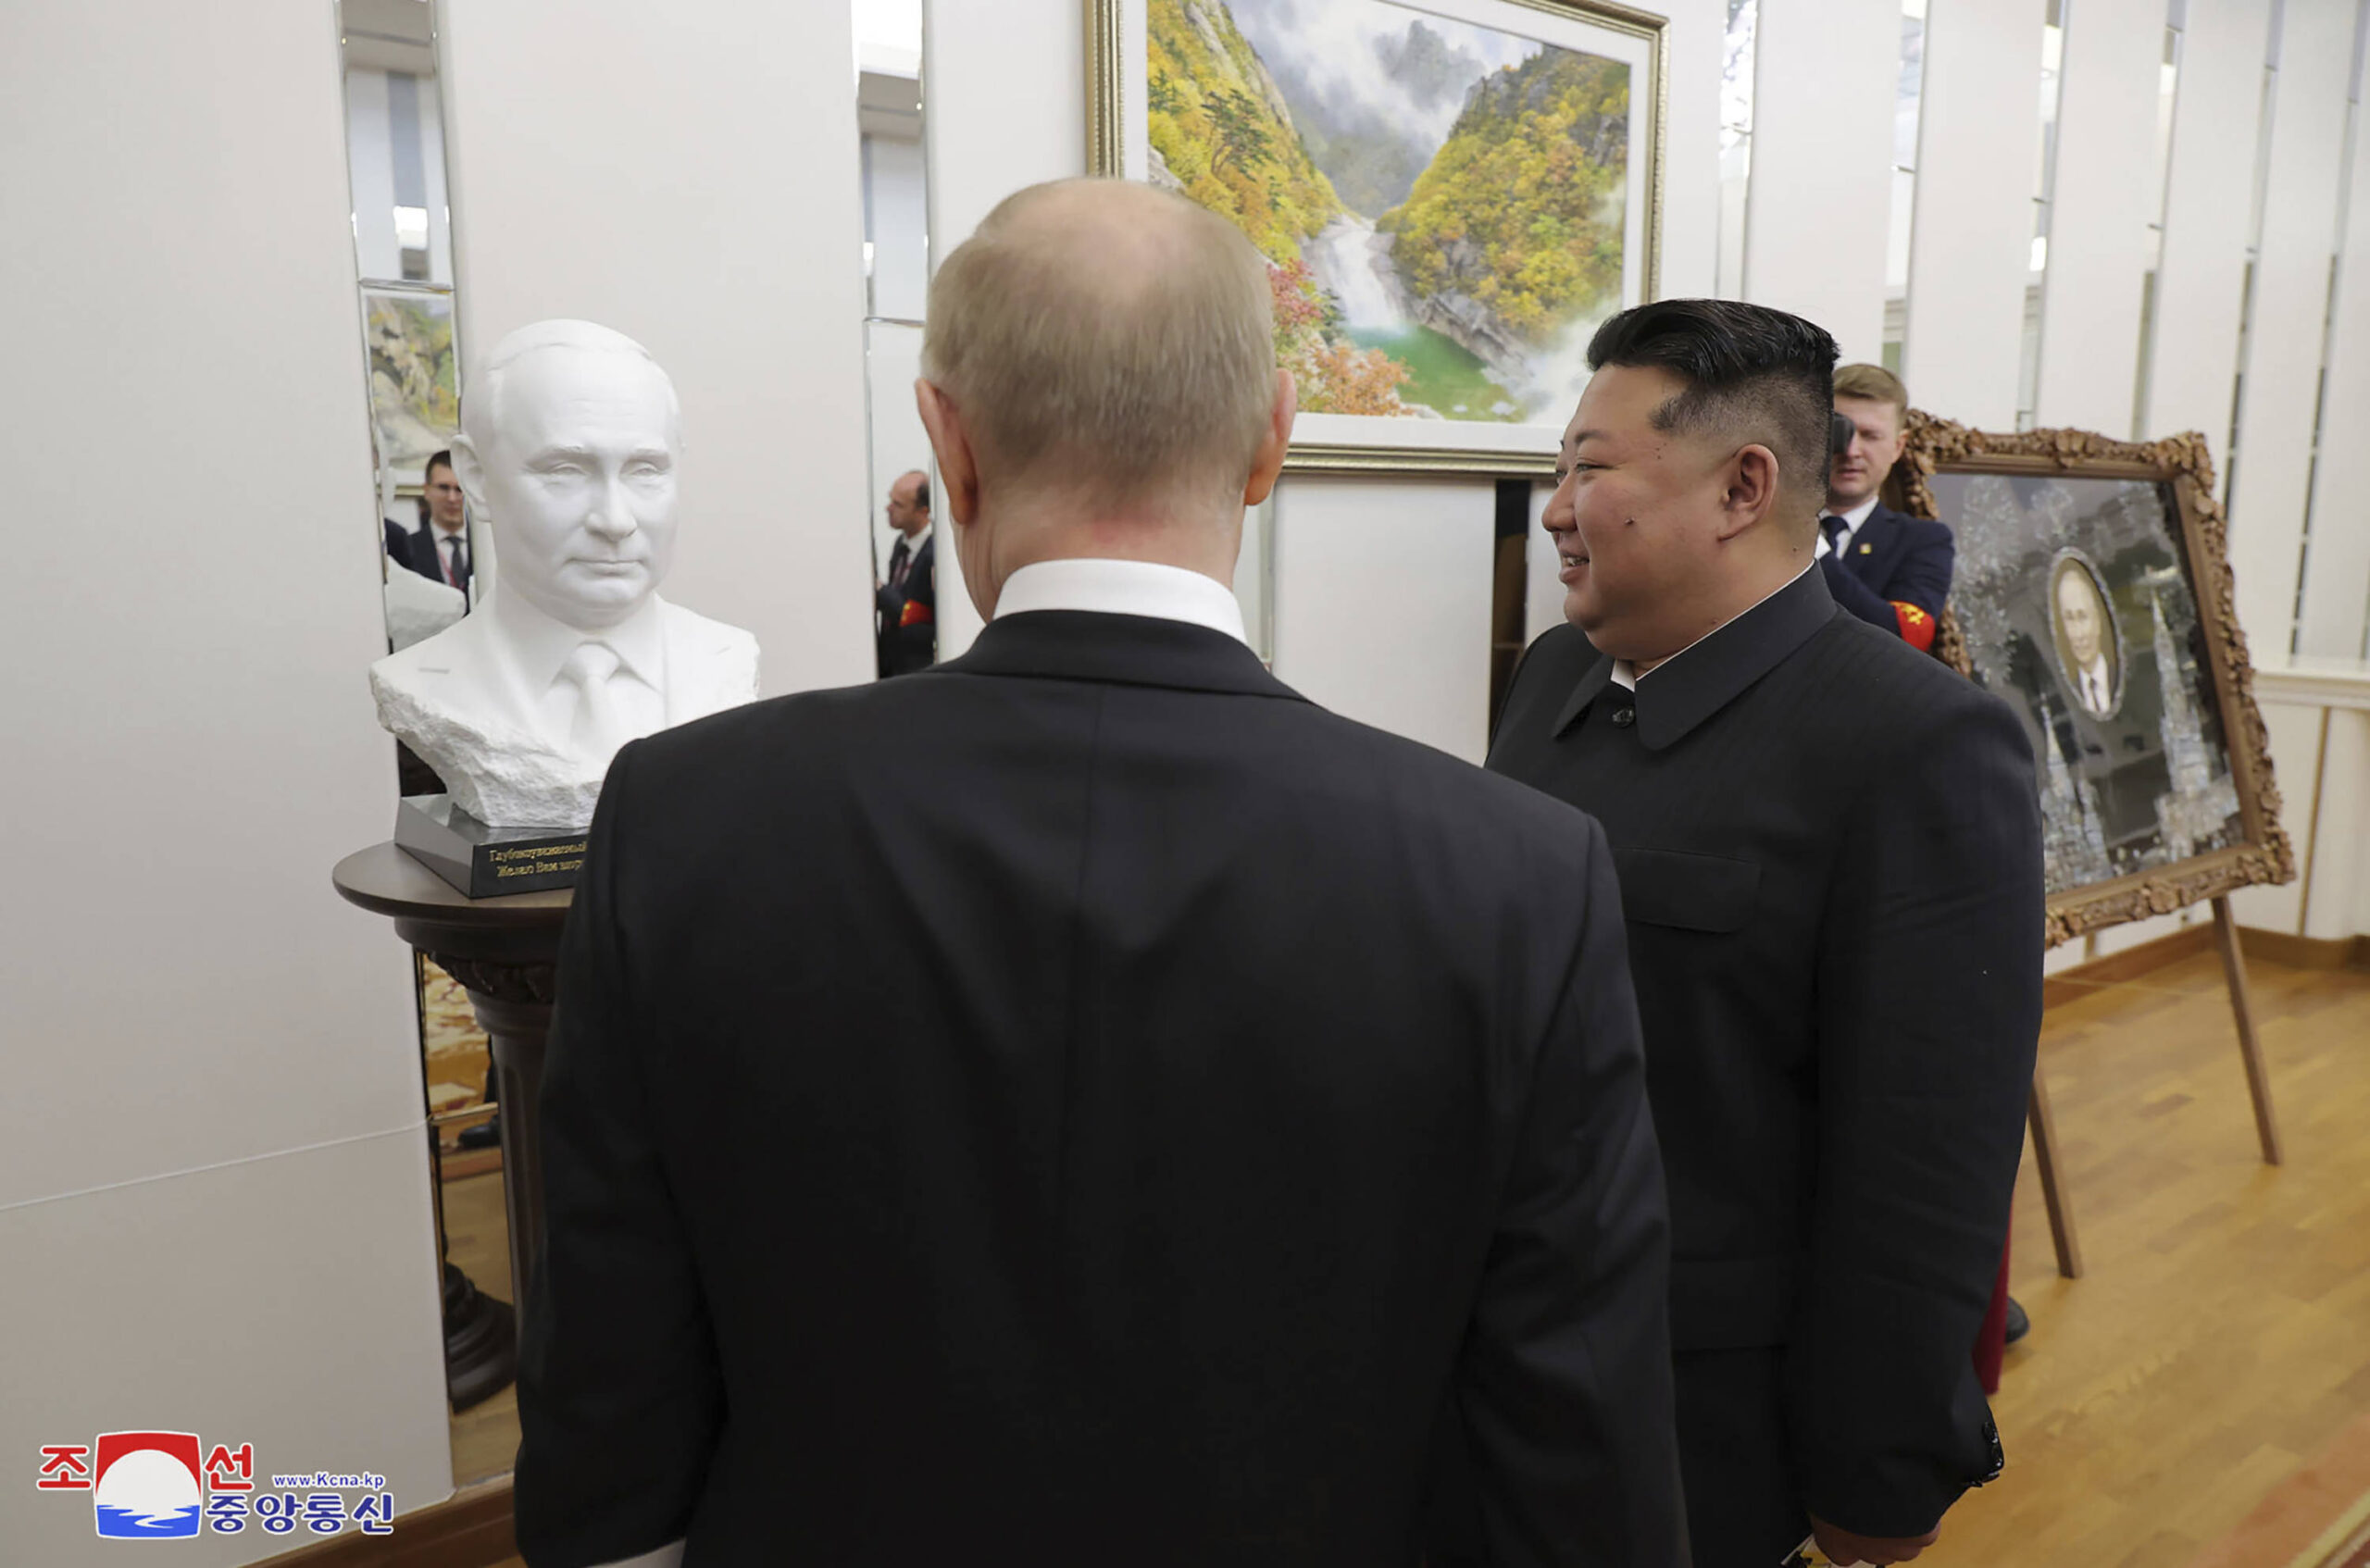 Kim Jong Un, à droite, offre au président russe Vladimir Poutine, à l'avant, un buste à son effigie à la maison des invités d'État à Pyongyang, en Corée du Nord, mercredi 19 juin. © AP Photo/KCNA